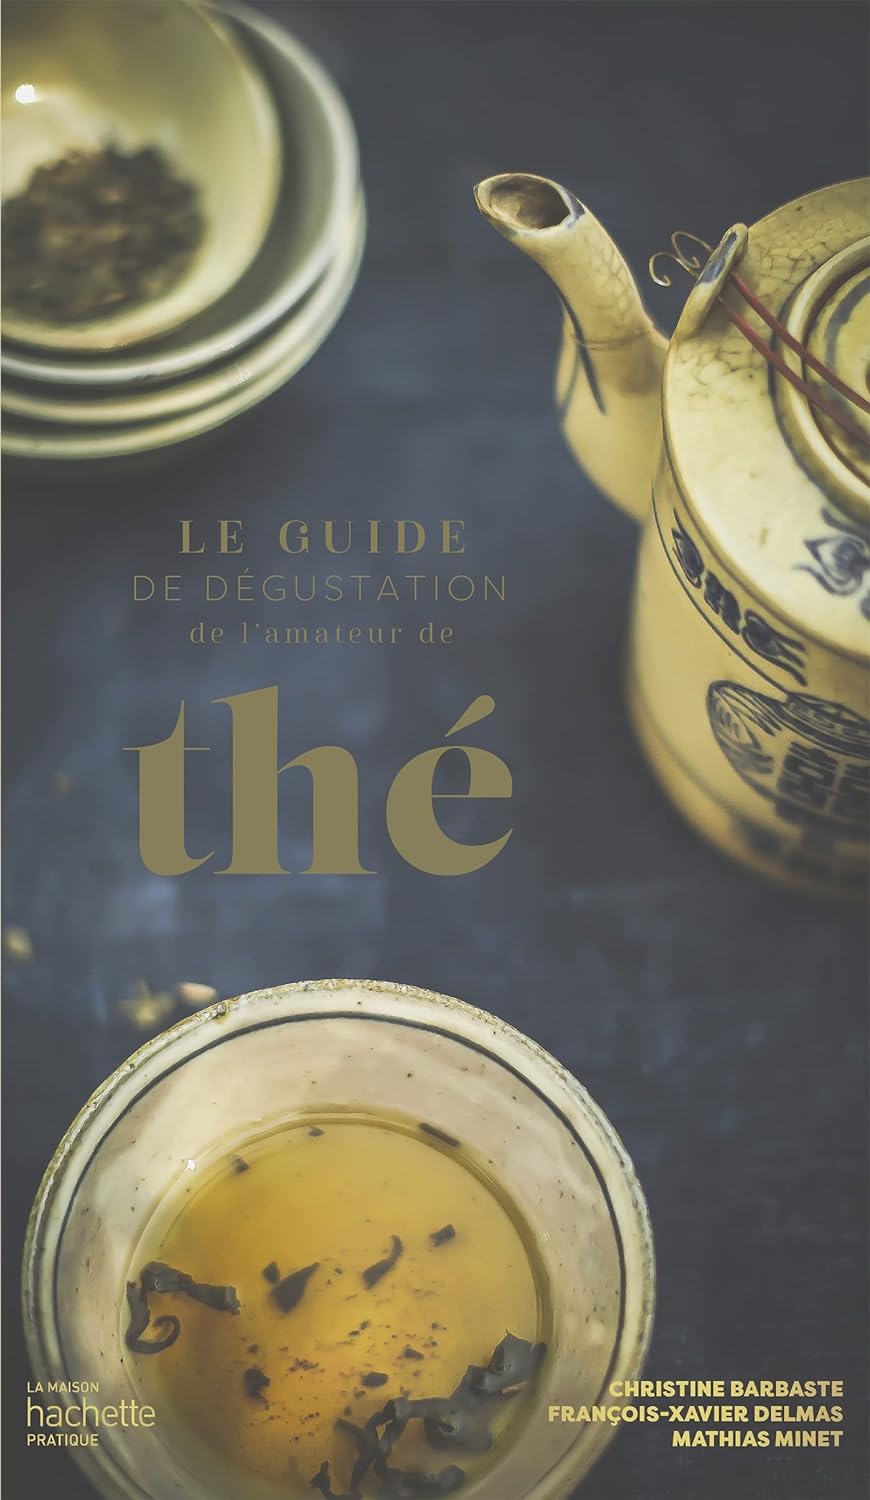 Le guide de dégustation de l'amateur de thé (Français language, 2022, Hachette Prat)